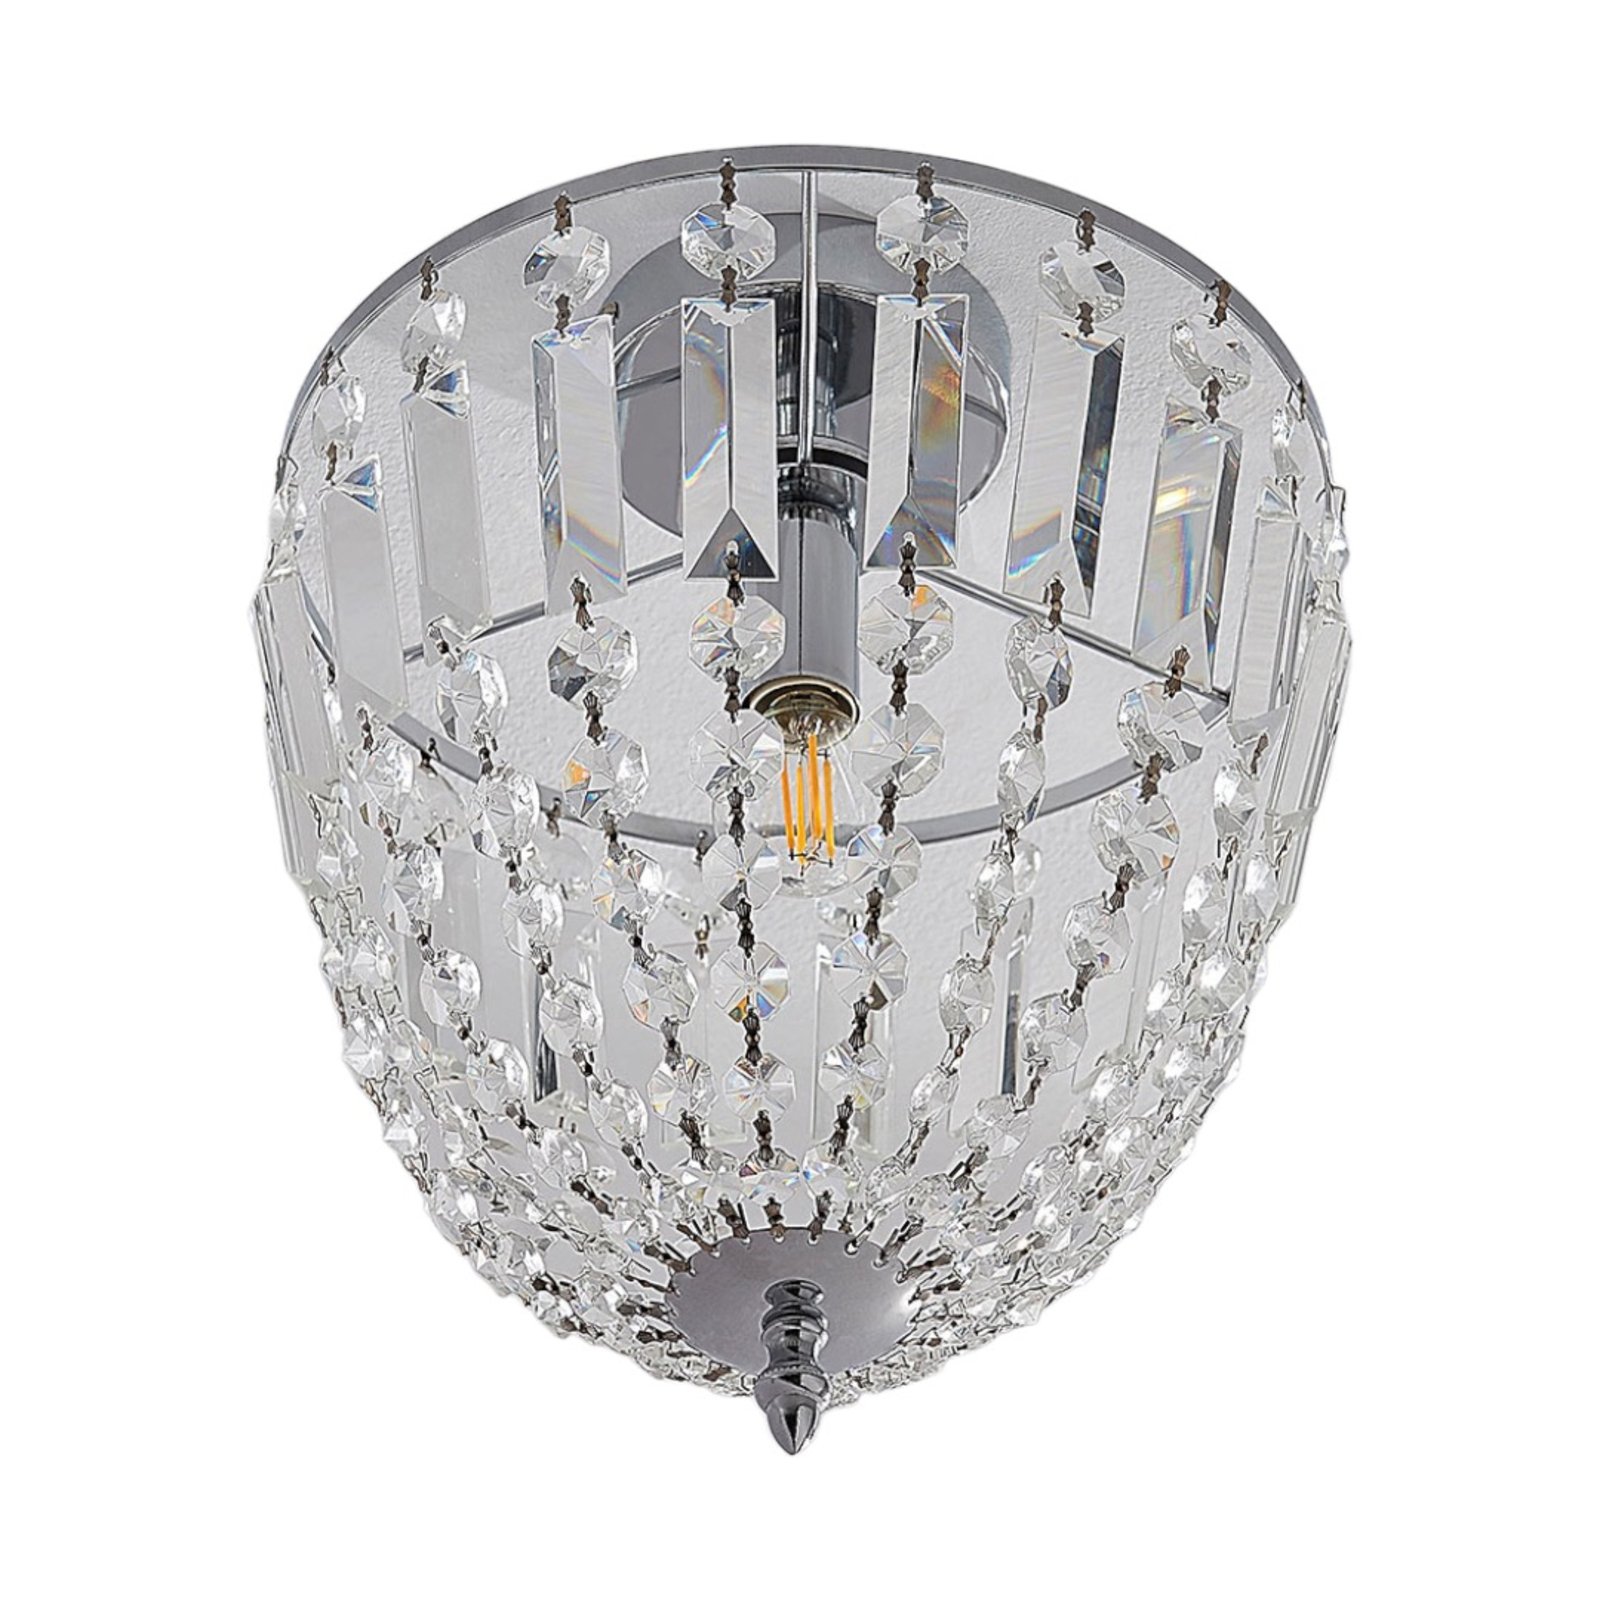 Glinsterende glazen plafondlamp Lionello